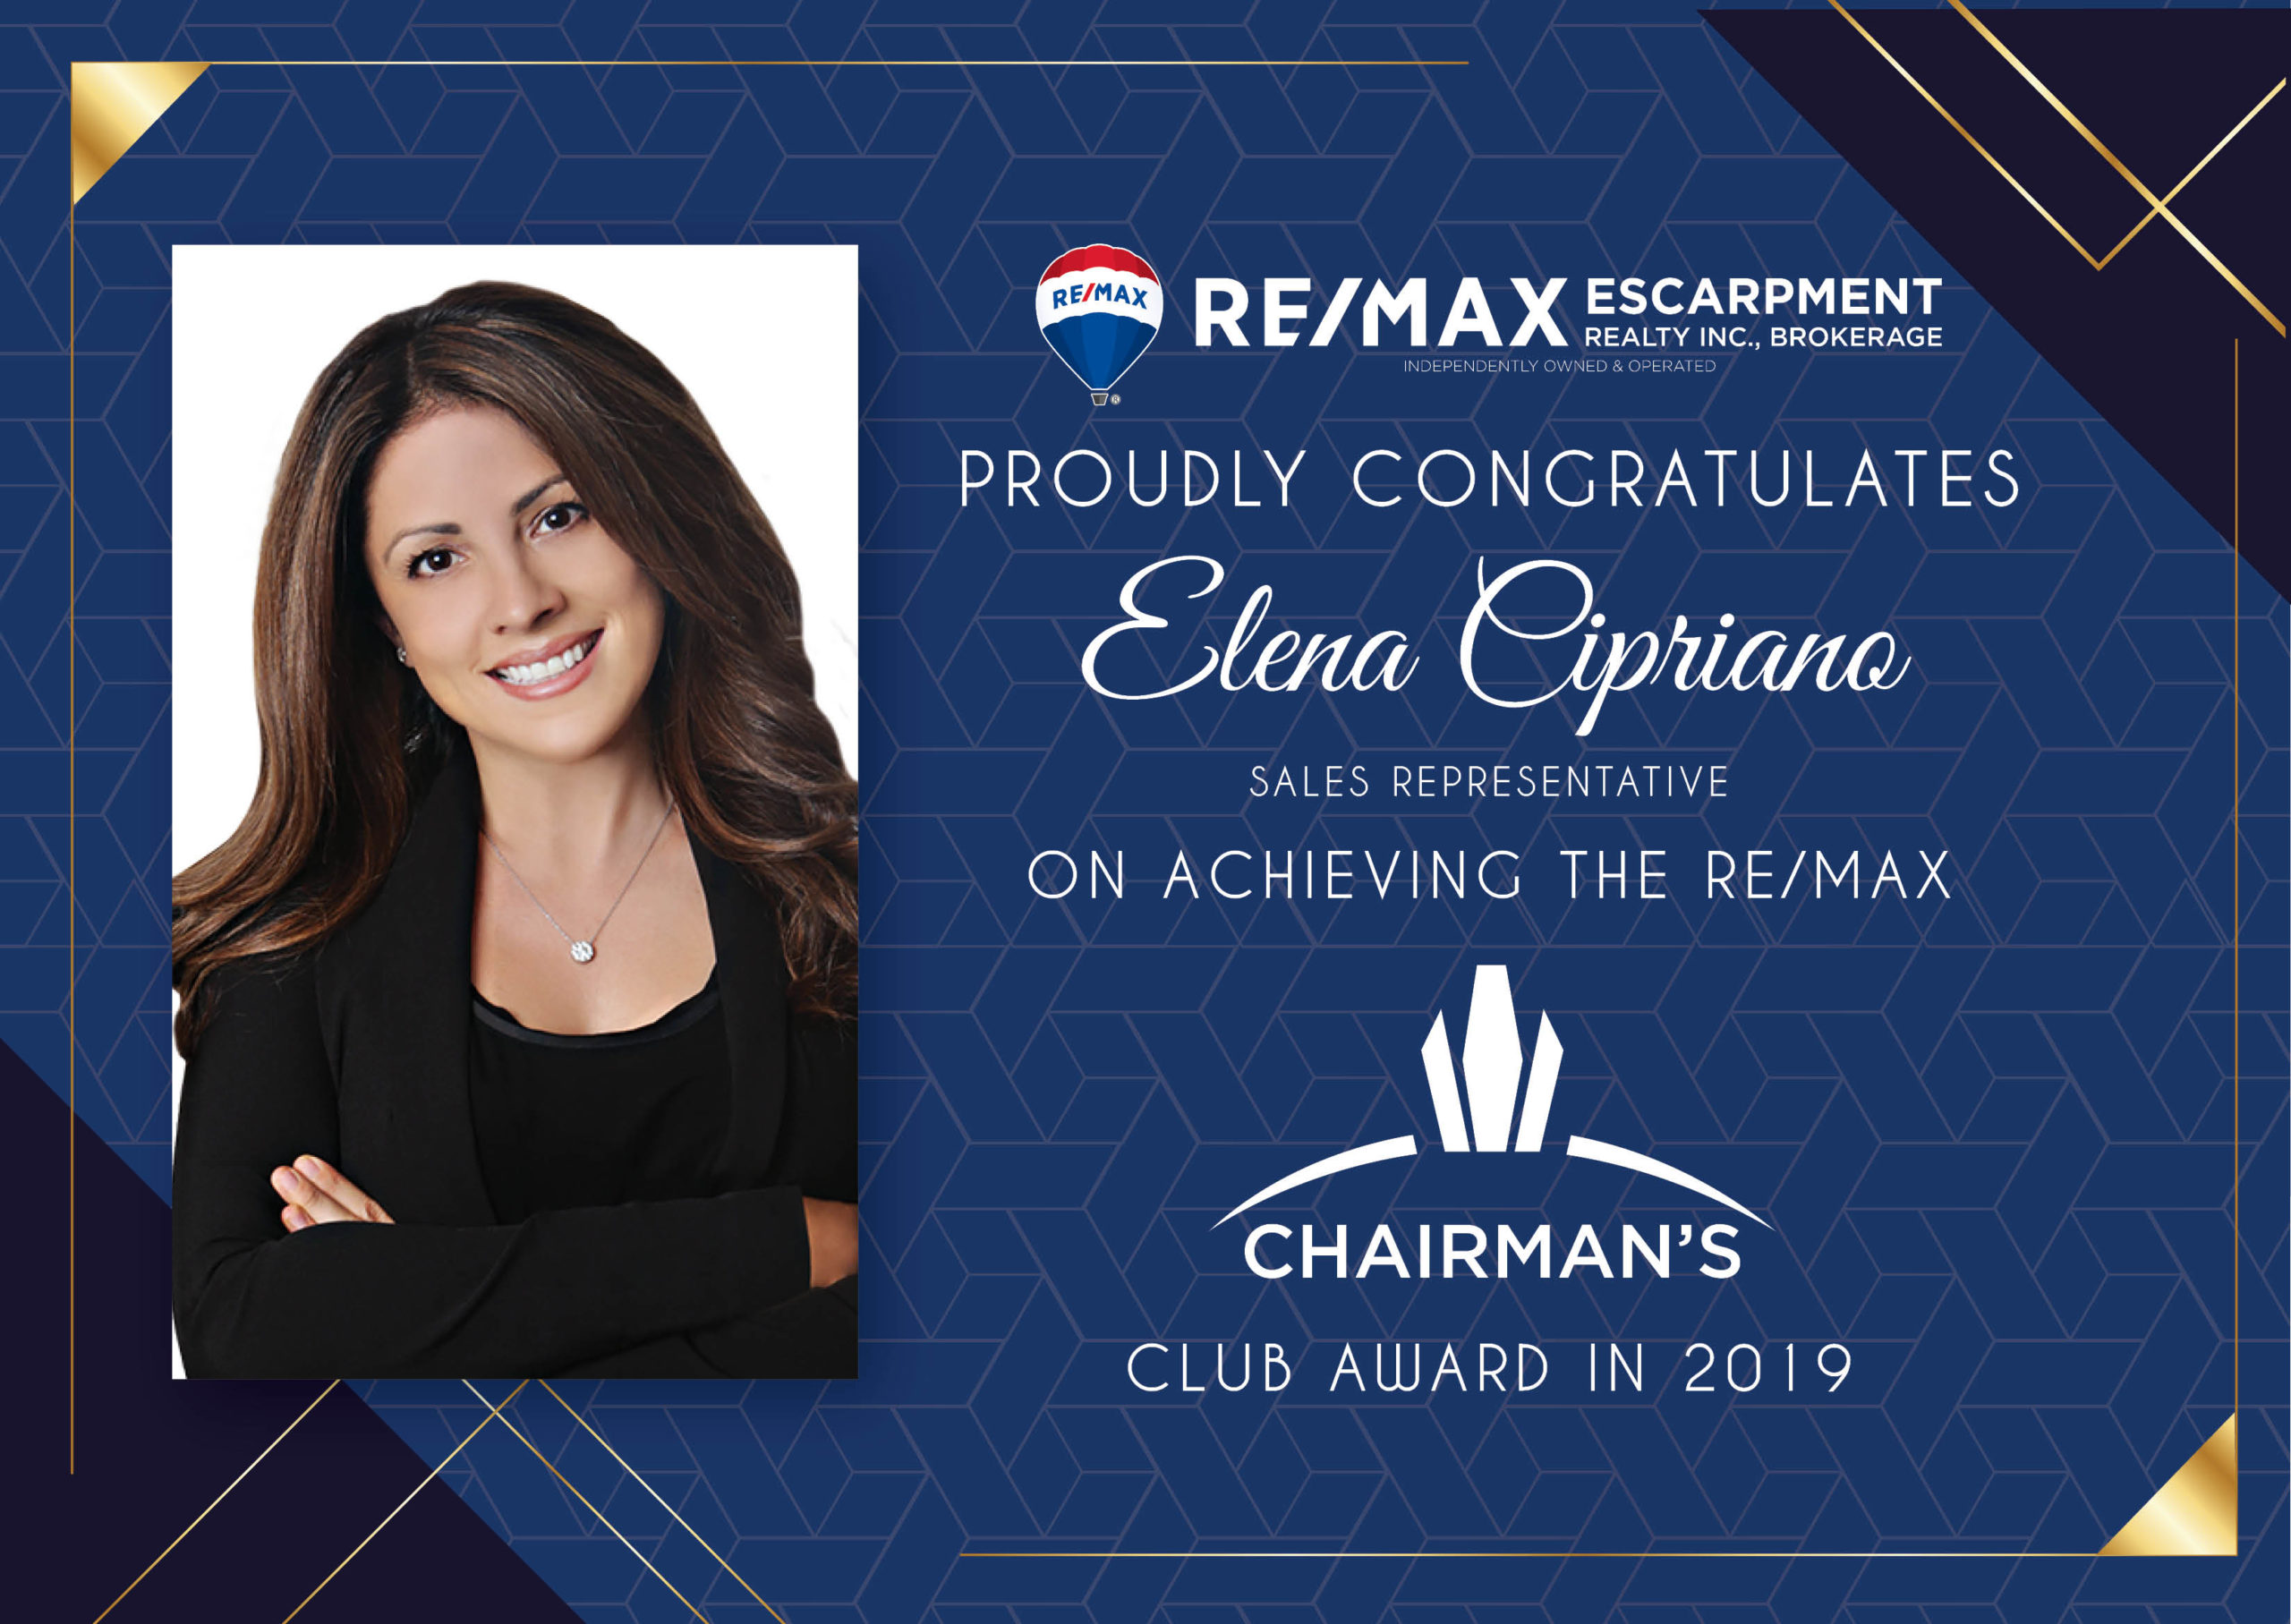 Elena Cipriano Sales Representative Chairman's Club Award 2019